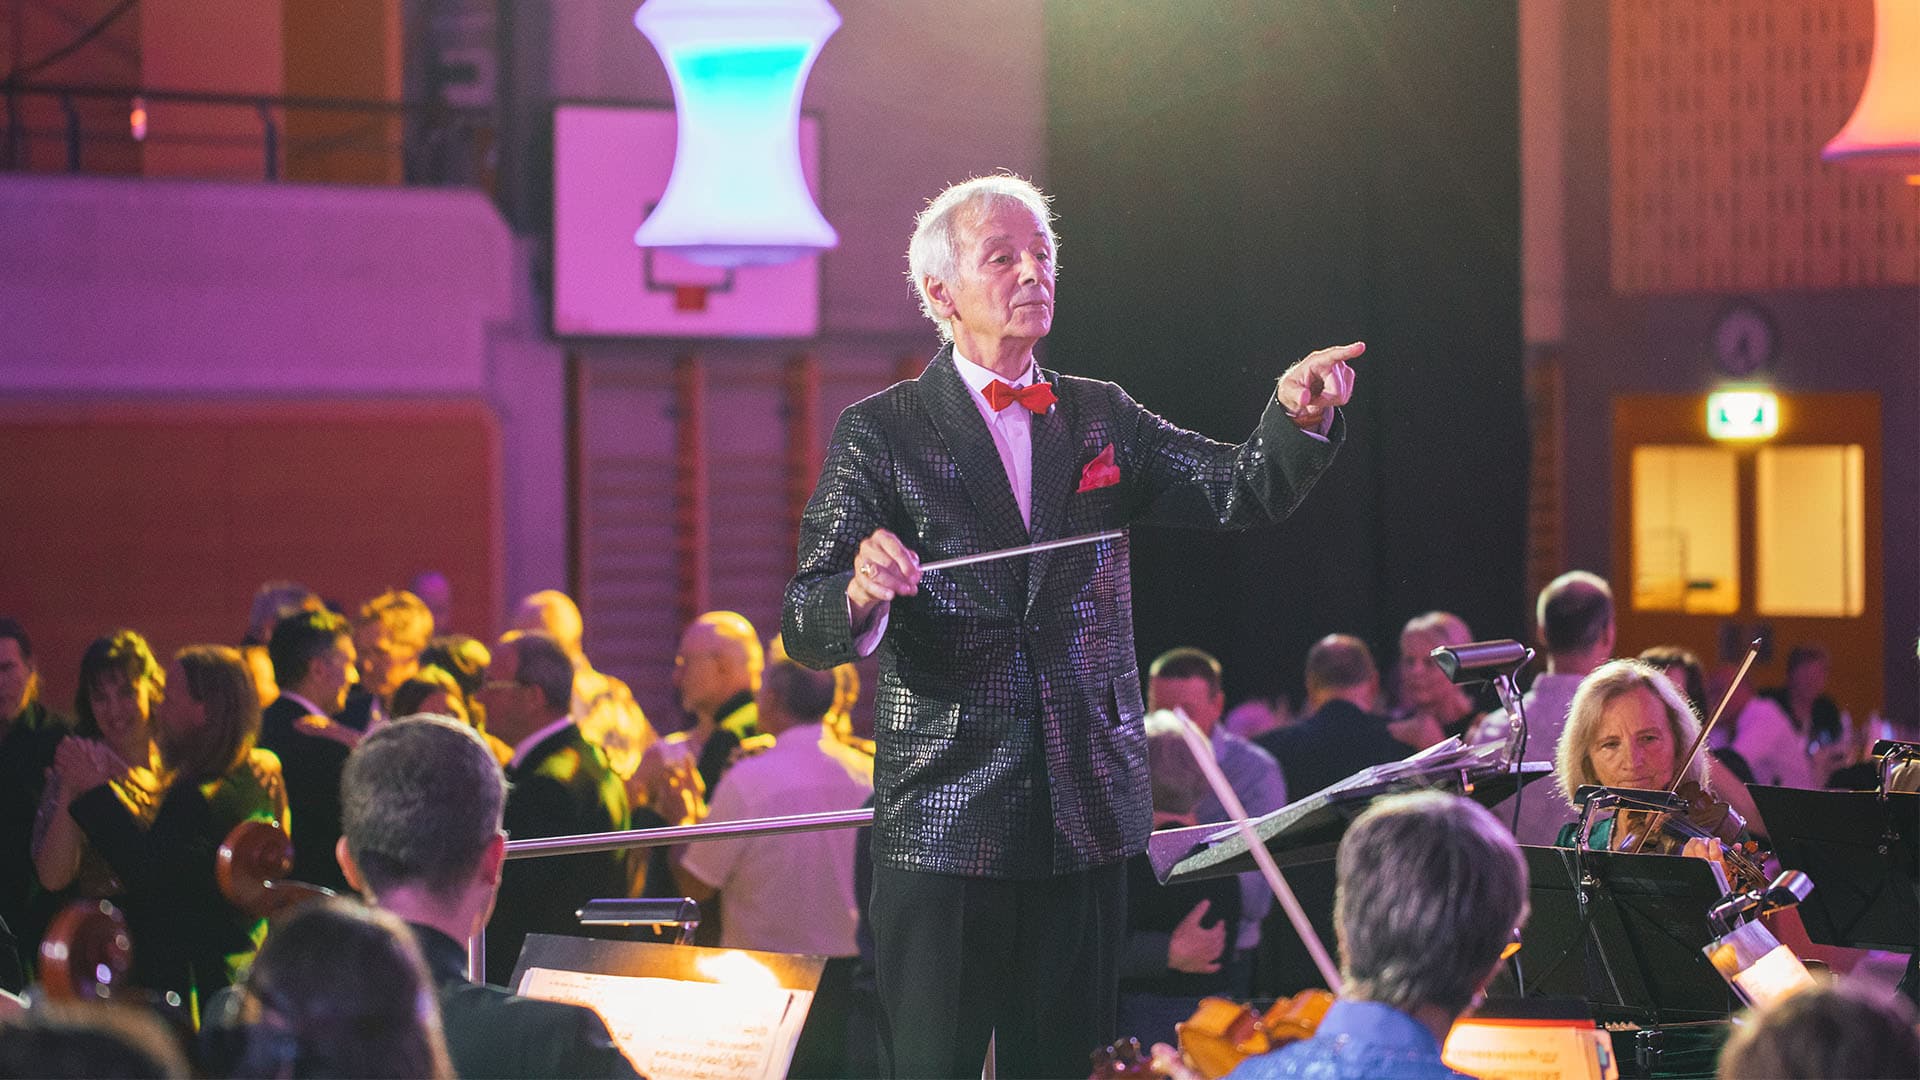 Dirigent leitet Orchester bei Konzertveranstaltung.